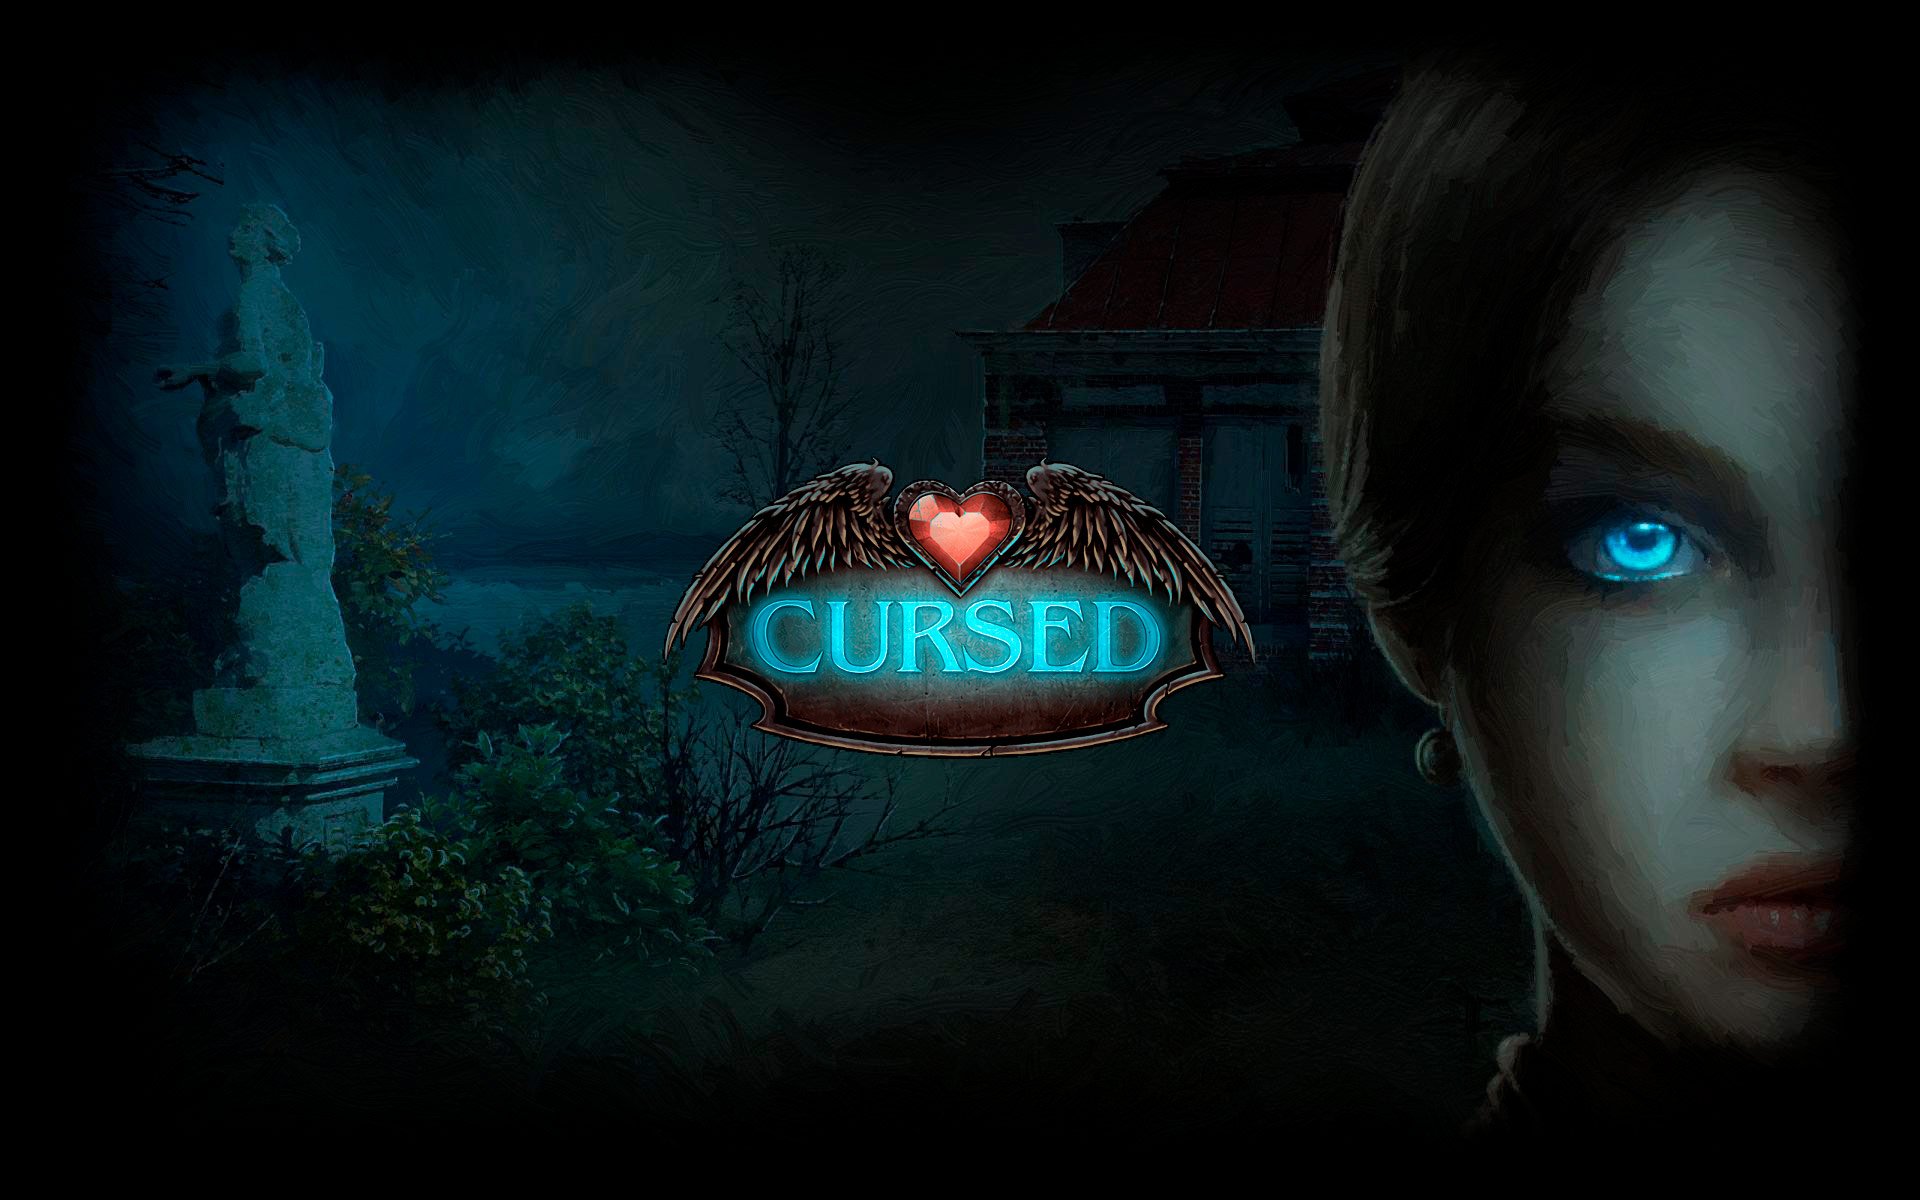 Cursed Night on Steam